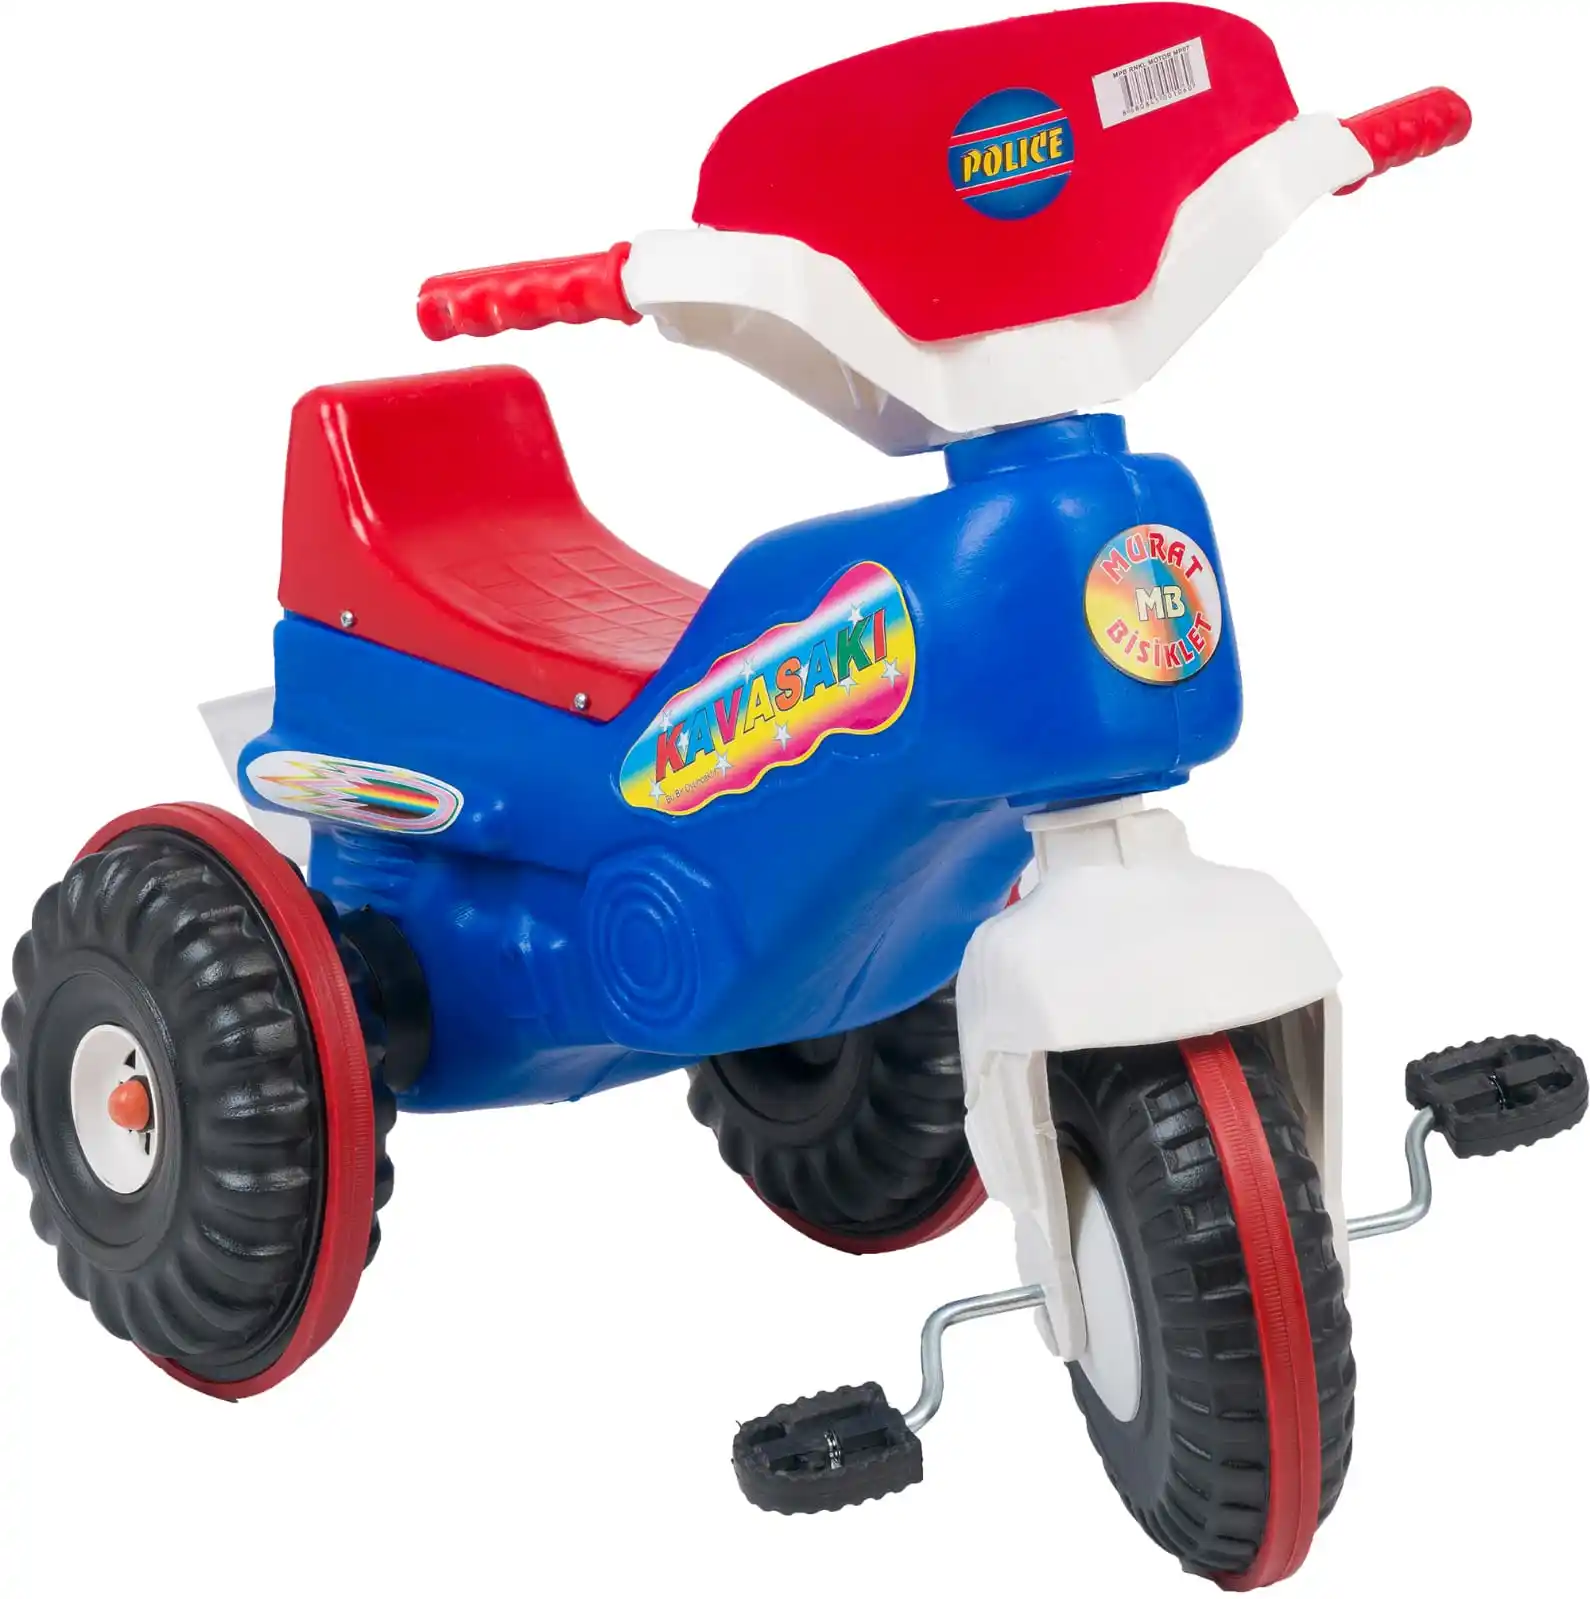 Brinquedos triciclo de carro para crianças, para bebês, vermelho, branco, azul, terno, material de plástico, original, barato, crianças, bicicleta, 3 rodas